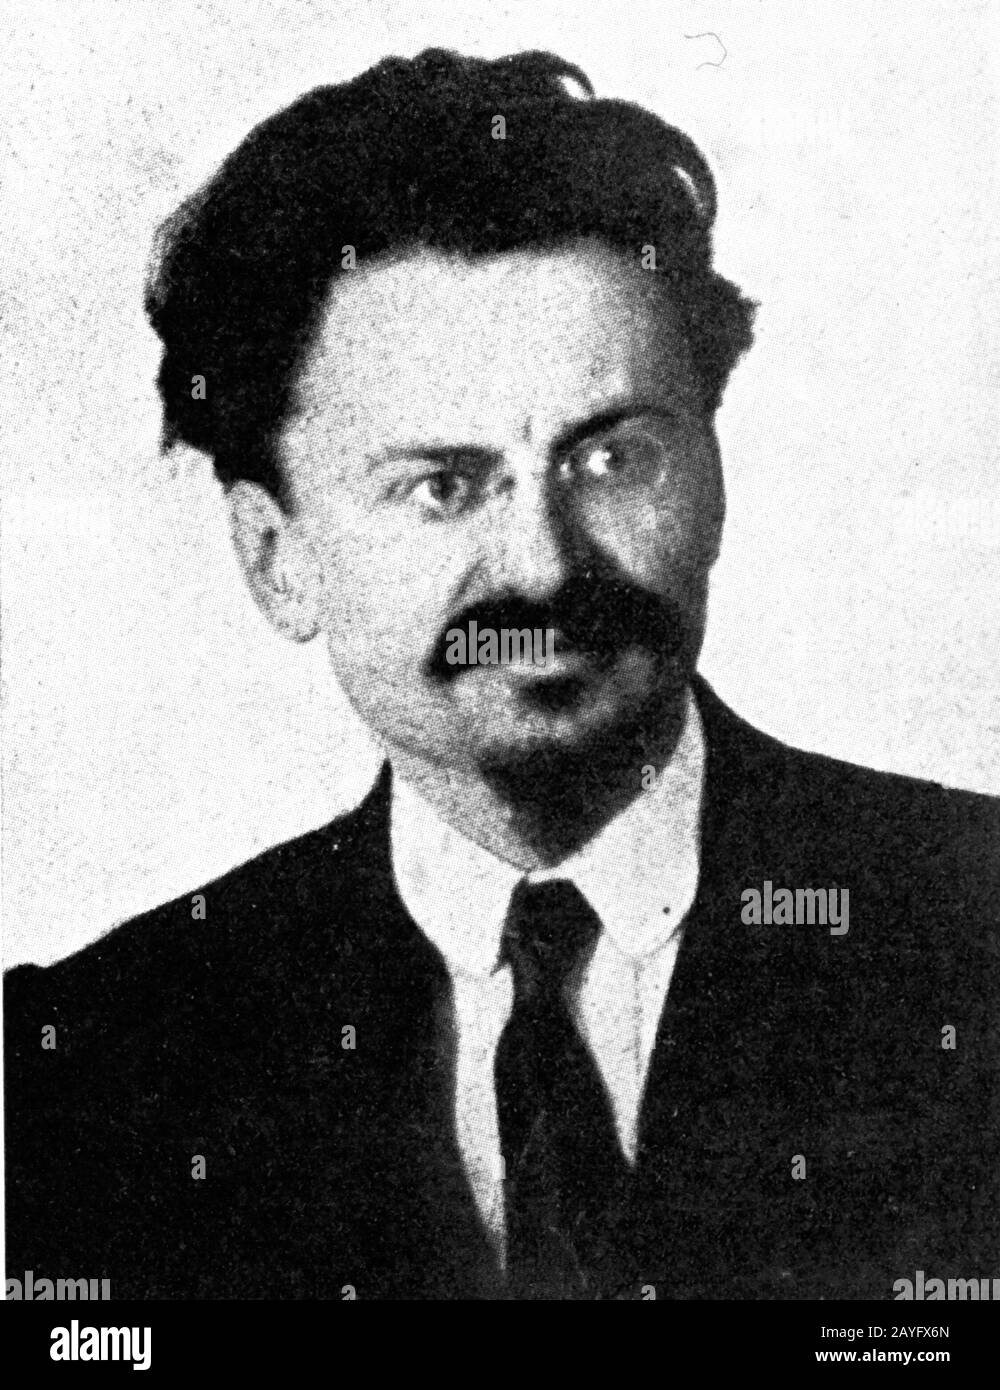 Leon Trotsky nacque Lev Davidovich Bronstein, un rivoluzionario comunista che fu uno dei sette membri del primo Politburo, fondato nel 1917 per gestire la Rivoluzione bolscevica. Fu espulso dal Partito Comunista nel novembre 1927 e assassinato a Città del Messico da Ramón Mercader, agente NKVD nato in Spagna, che moriva il 21 agosto 1940. Foto di una rivista del 1917 circa Foto Stock